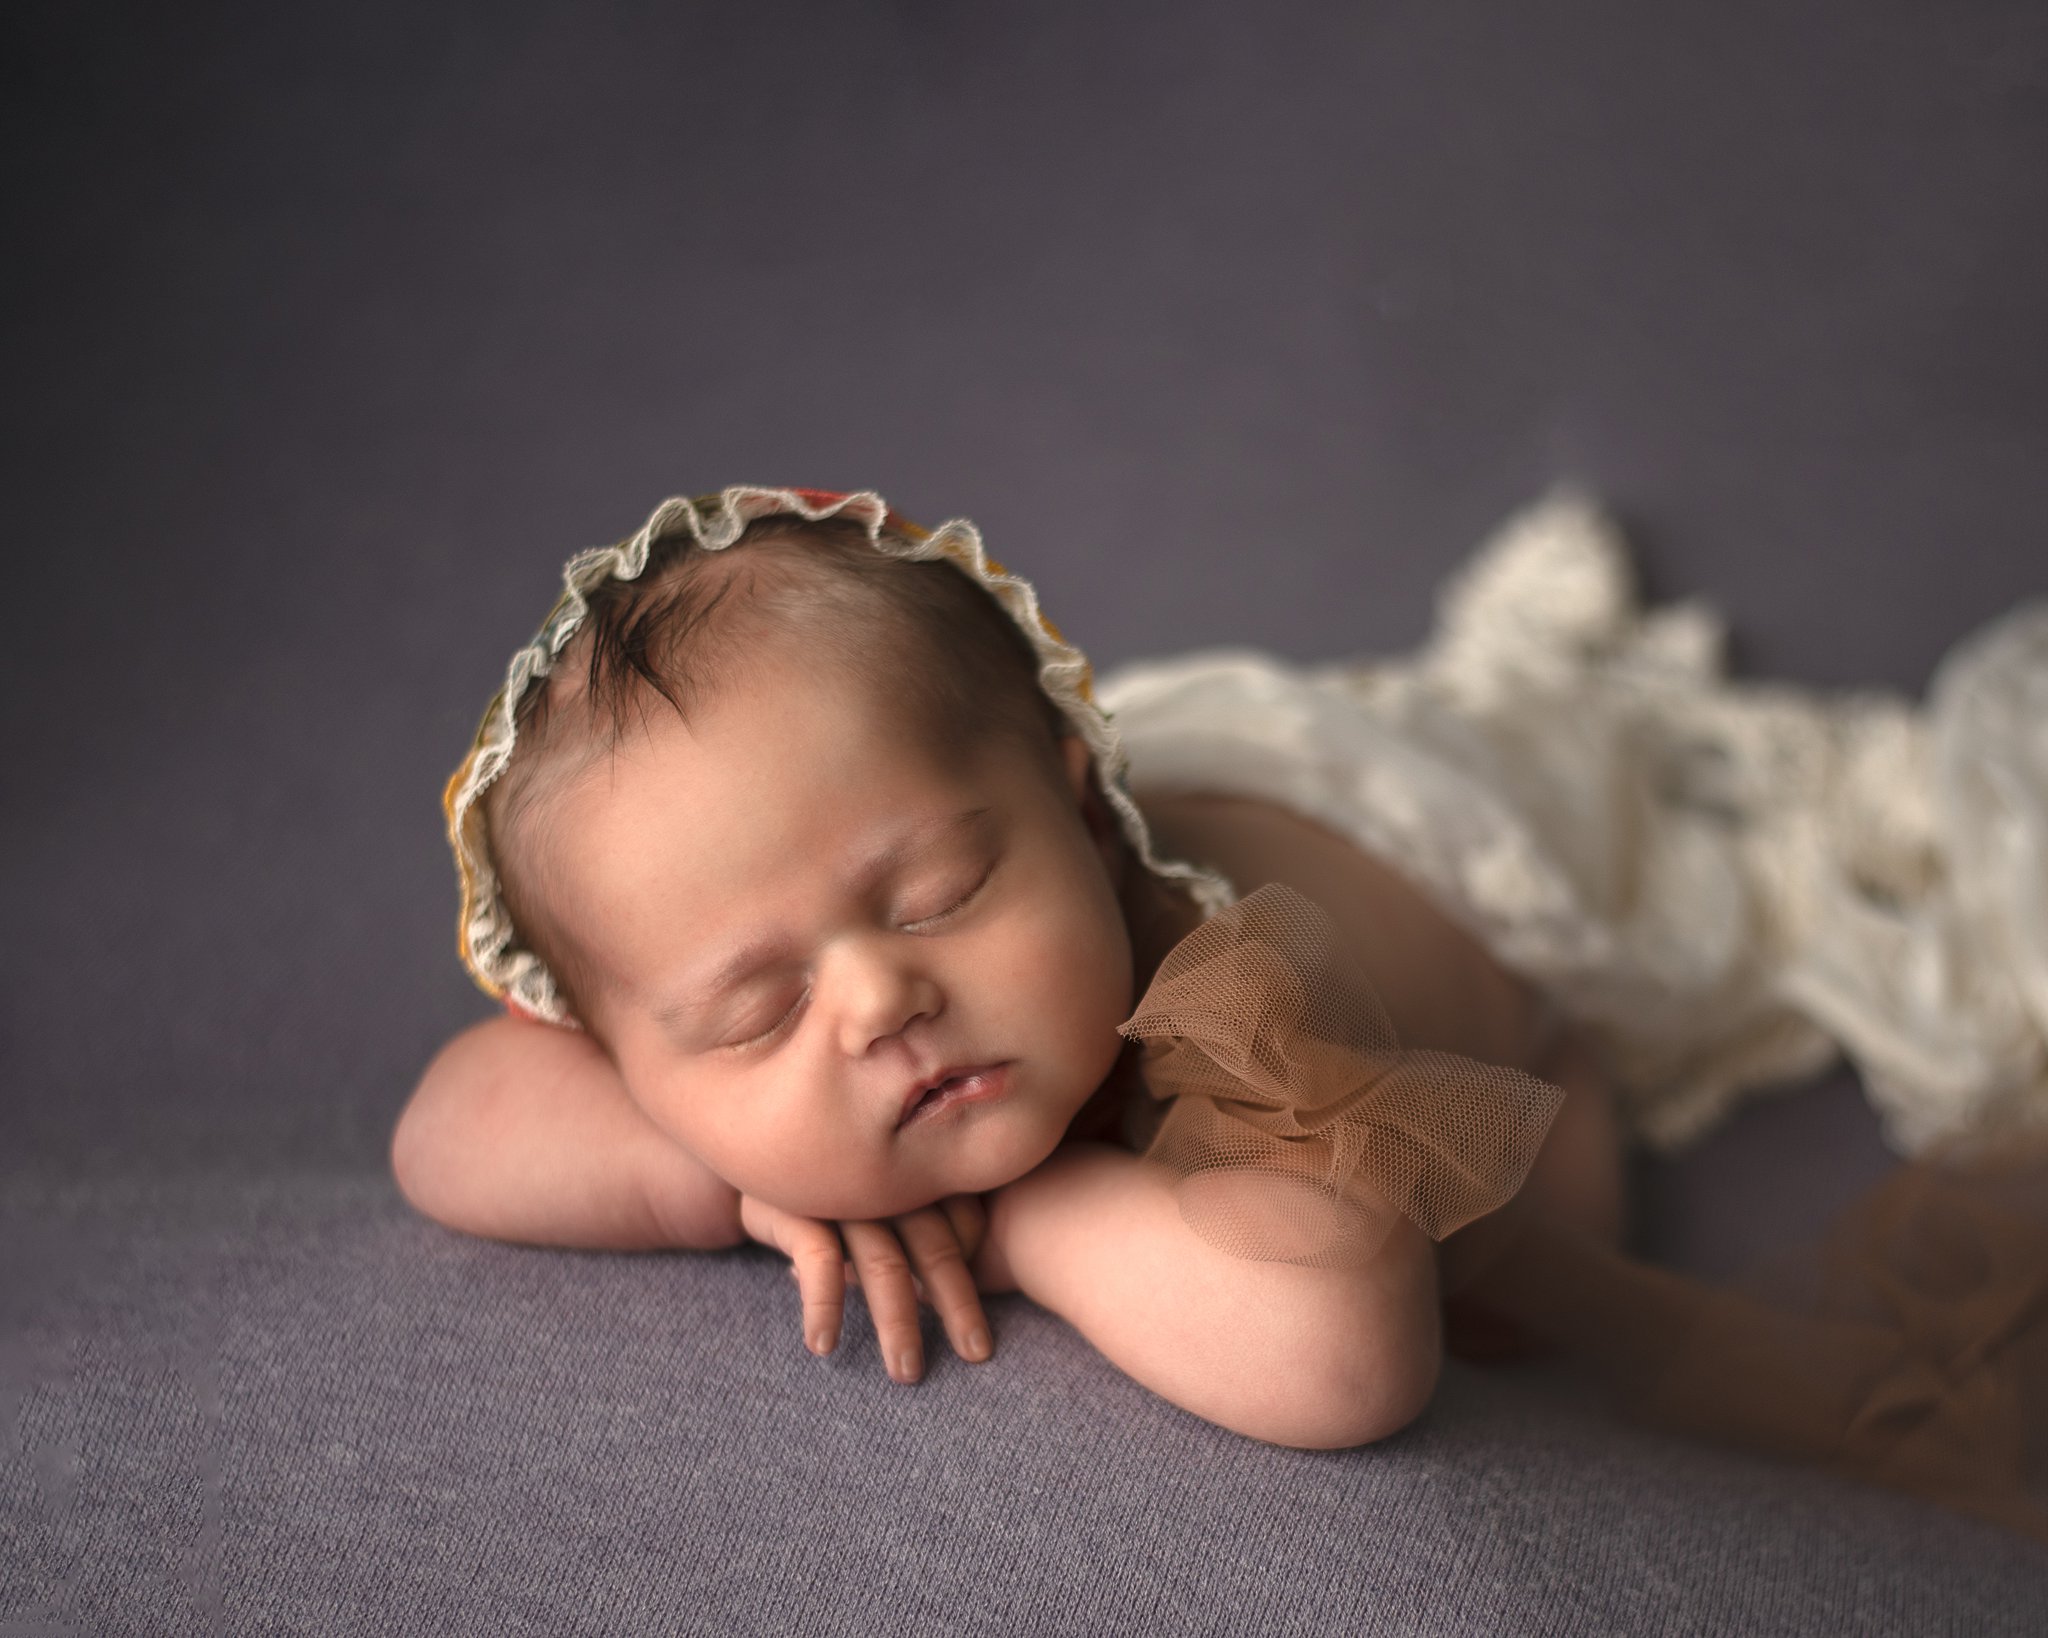 A newborn baby sleeps on folded hands in a bonnet lake st louis pediatricians